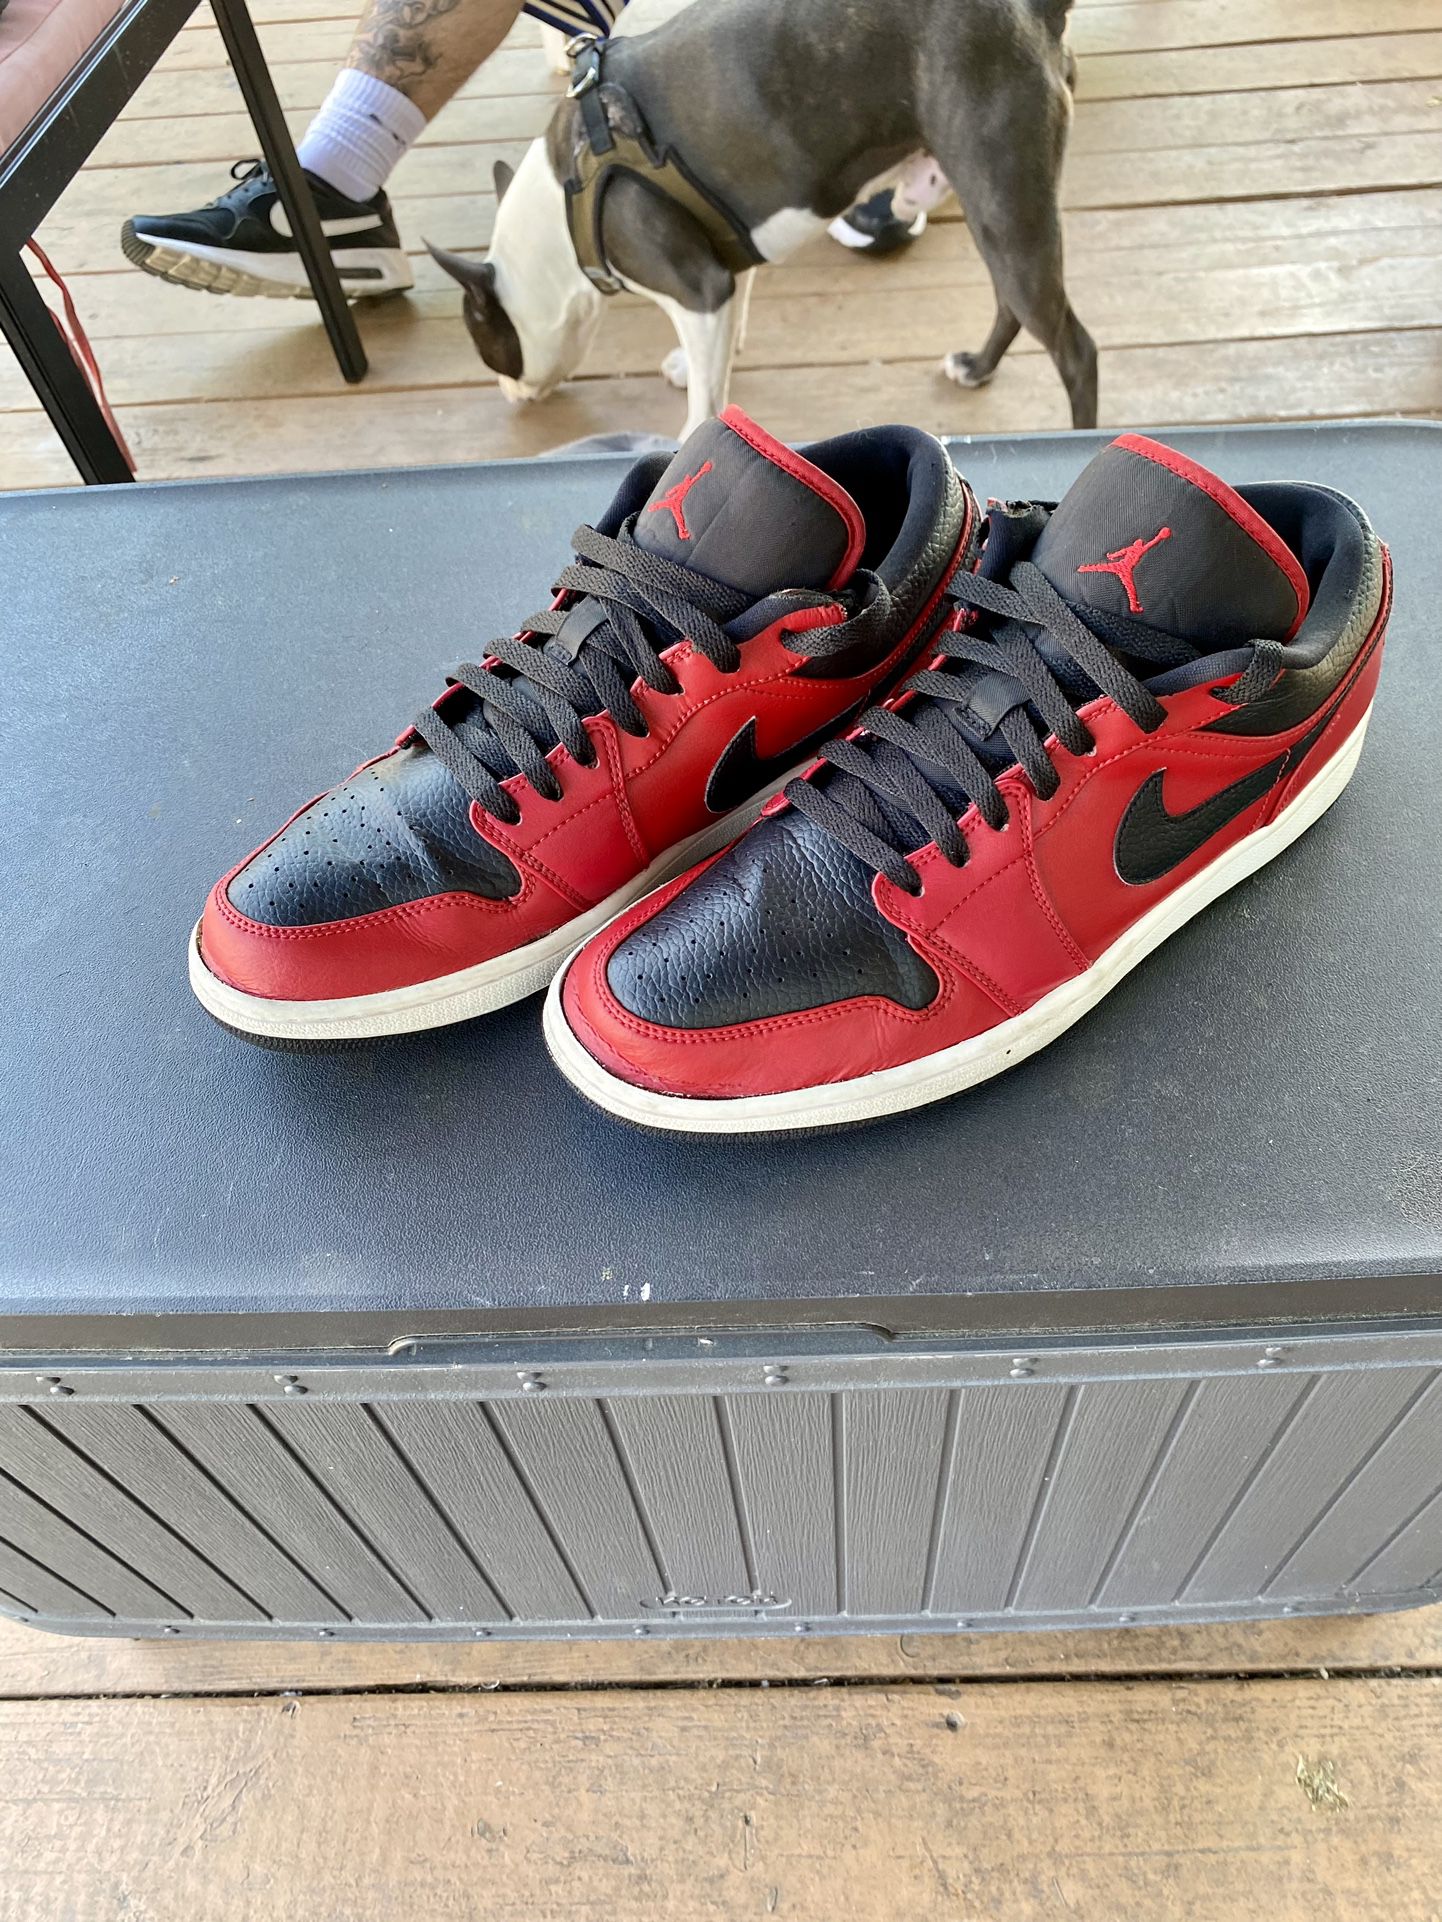 Air Jordan 1 Low Black And Red 